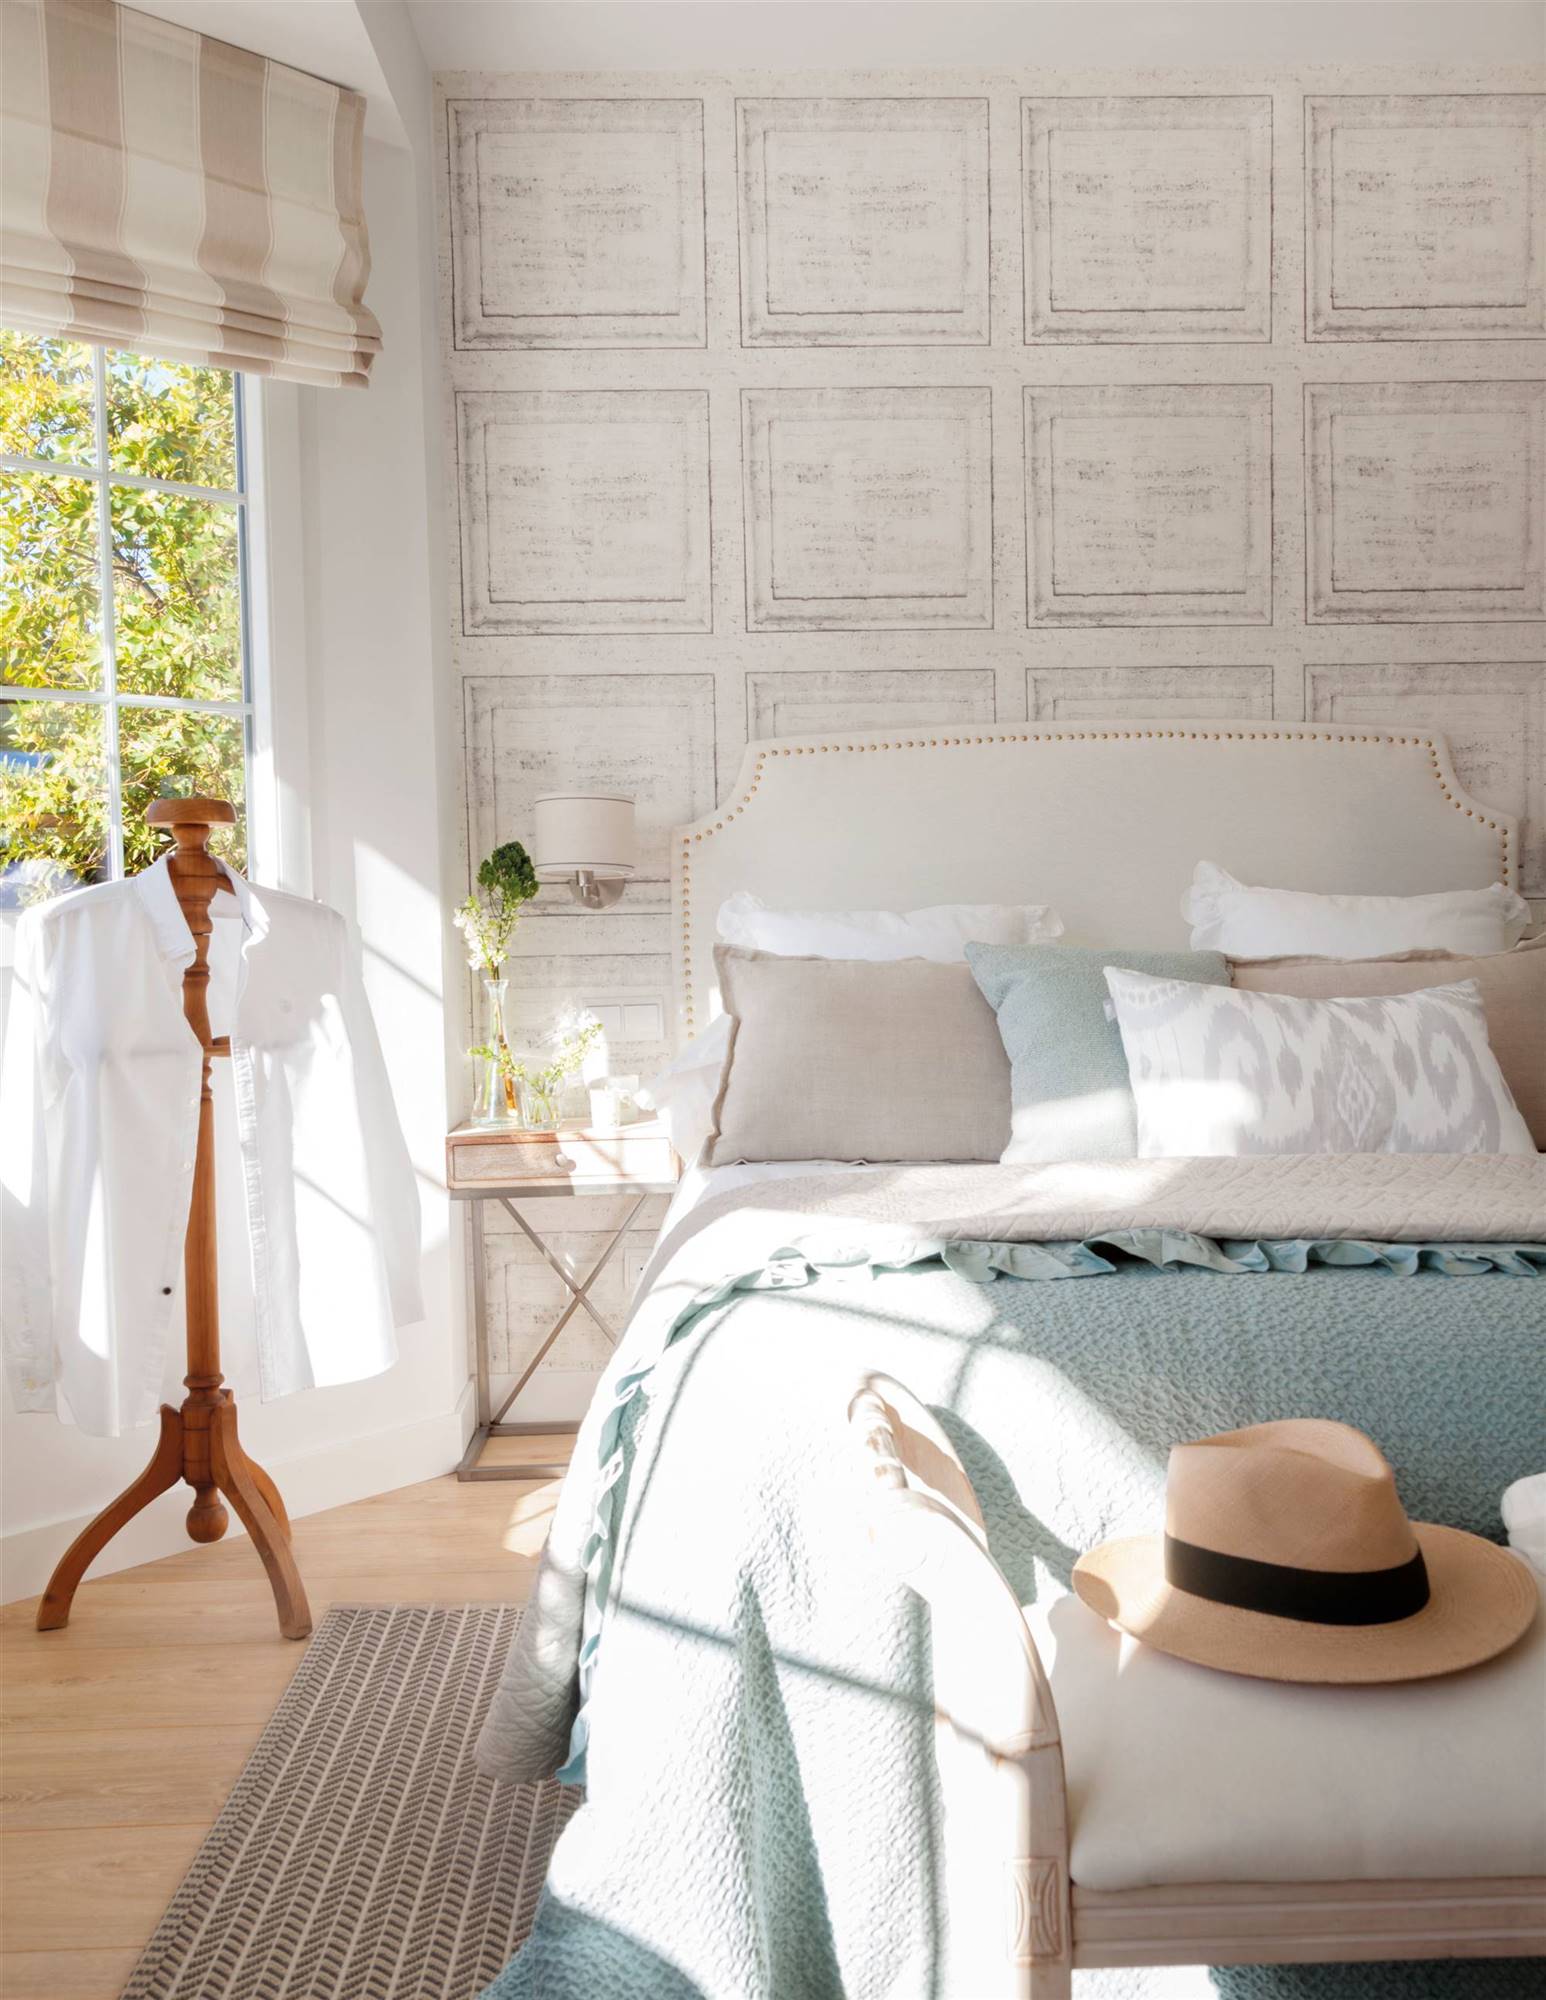 Dormitorio con pared cabecero con papel pintado que simula cuadros. 